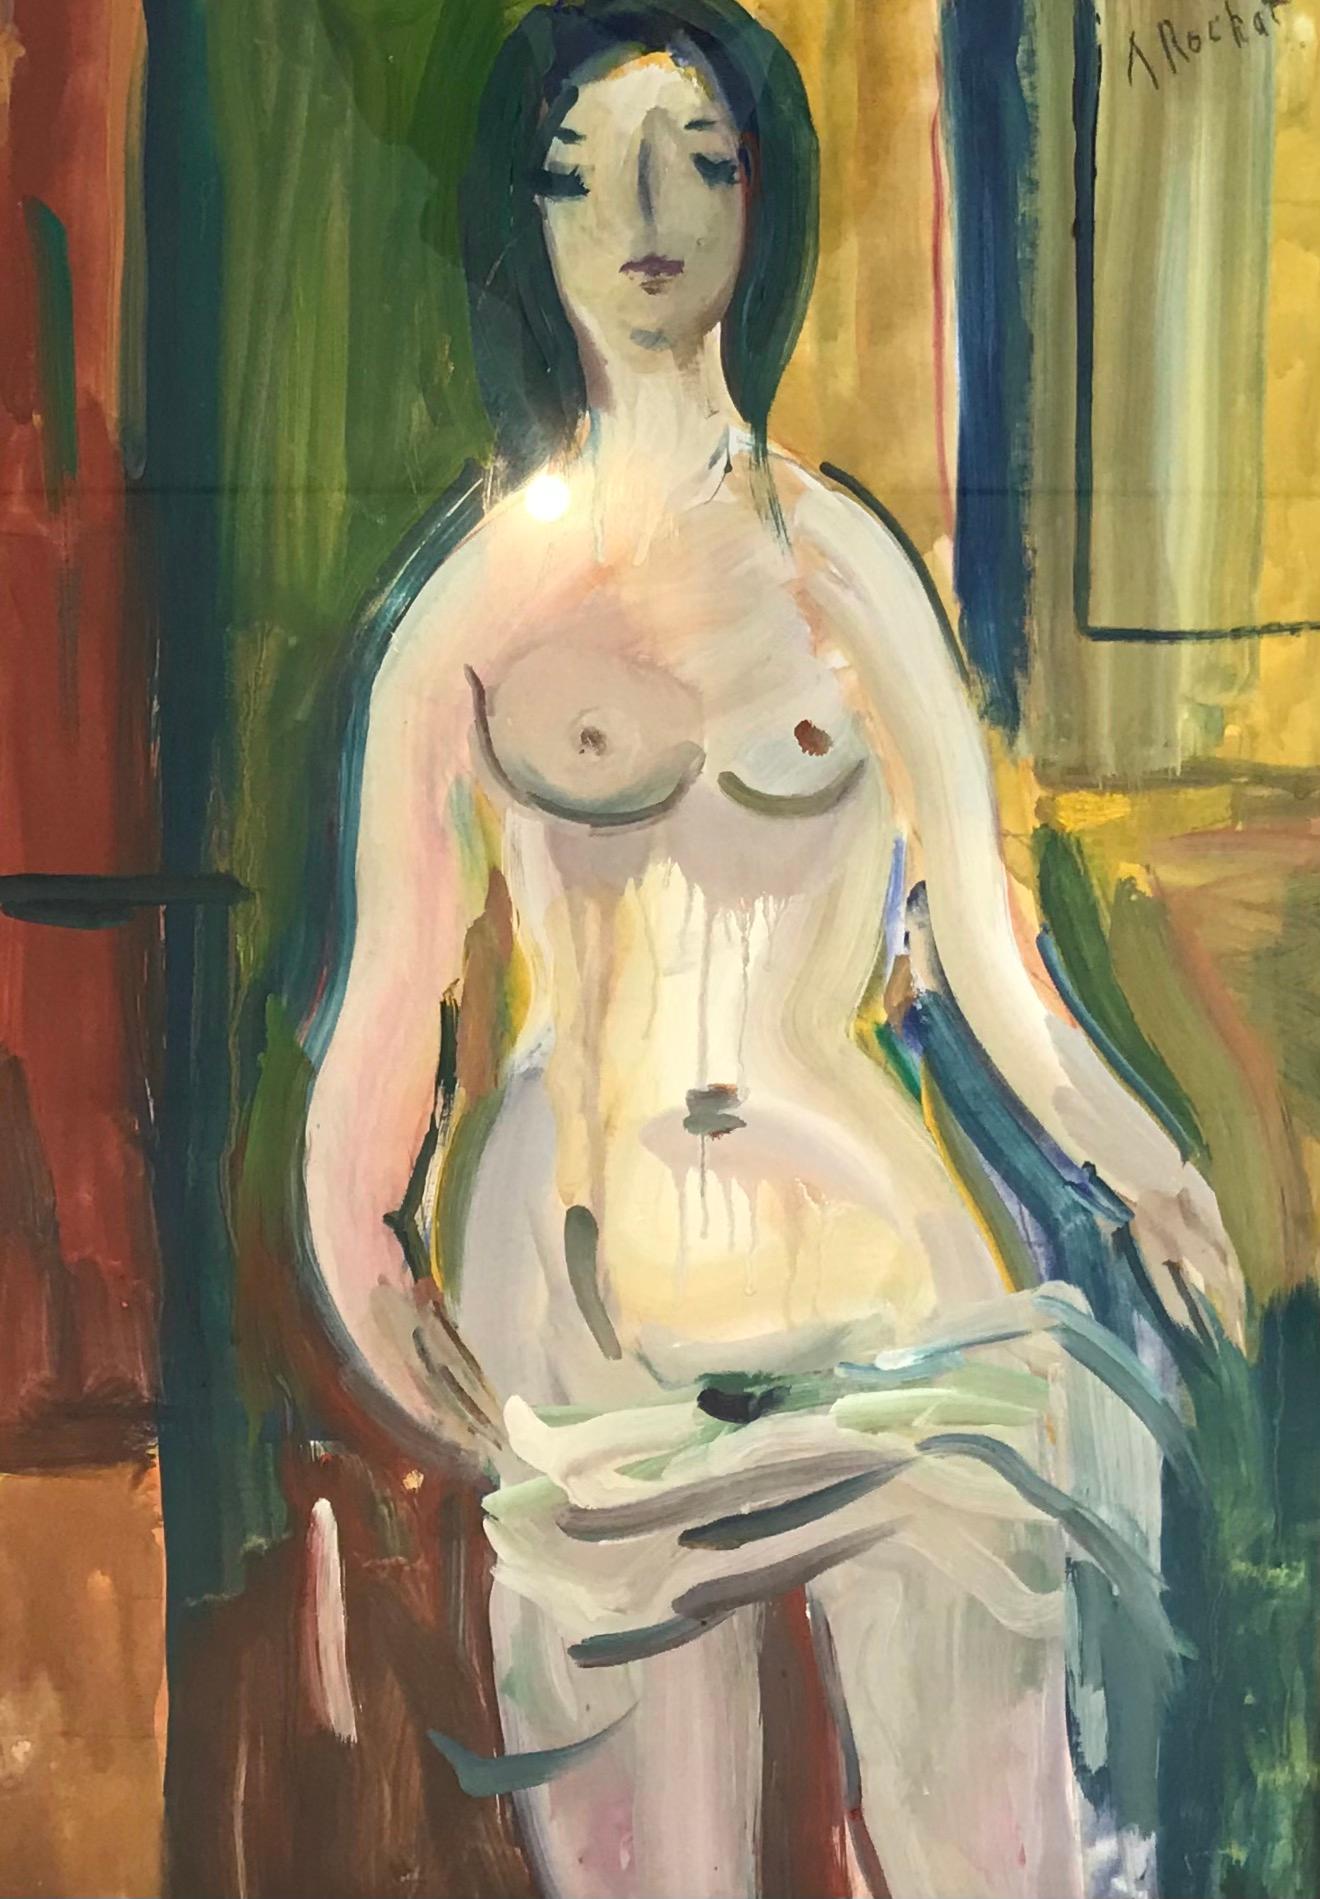 "Female nude" by Alexandre Rochat - Gouache